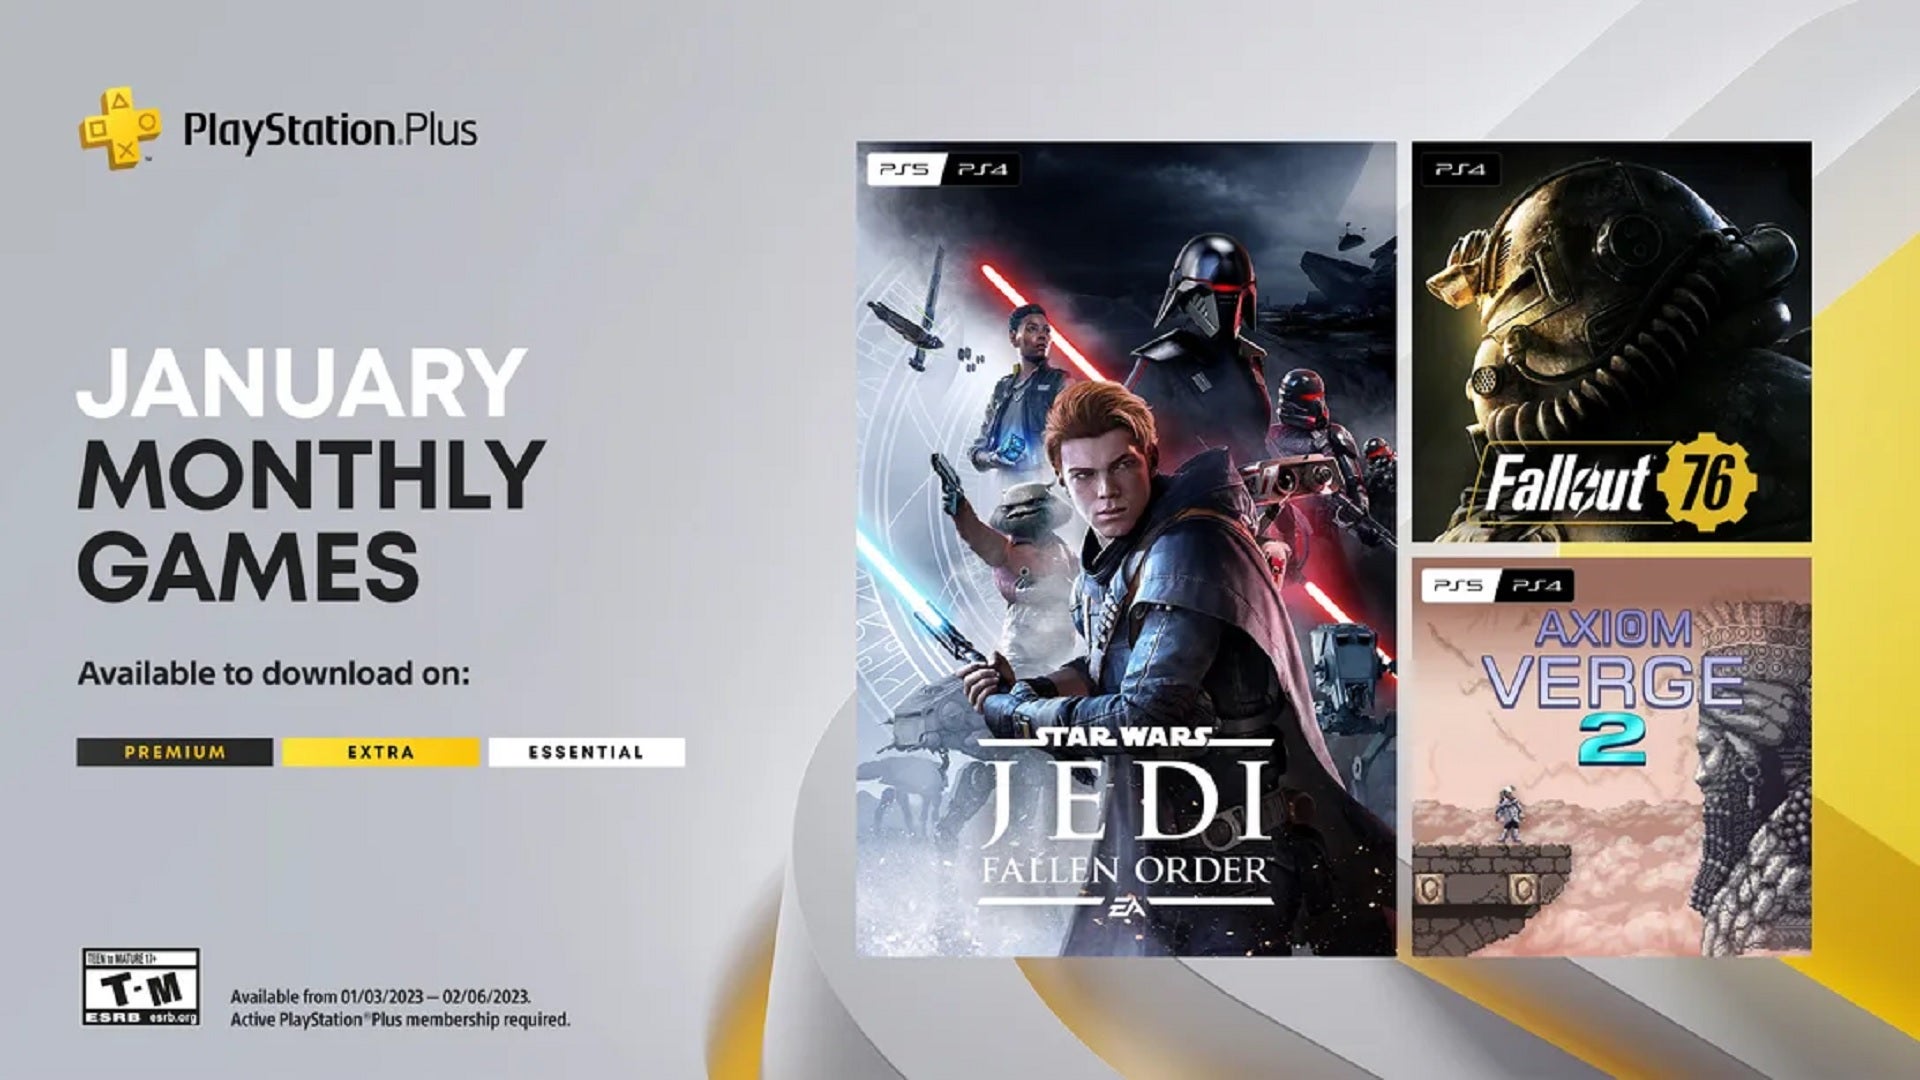 Jedi Fallen Order, Fallout 76, dan Axiom Verge 2 sudah tersedia di PlayStation Plus Essential sekarang!